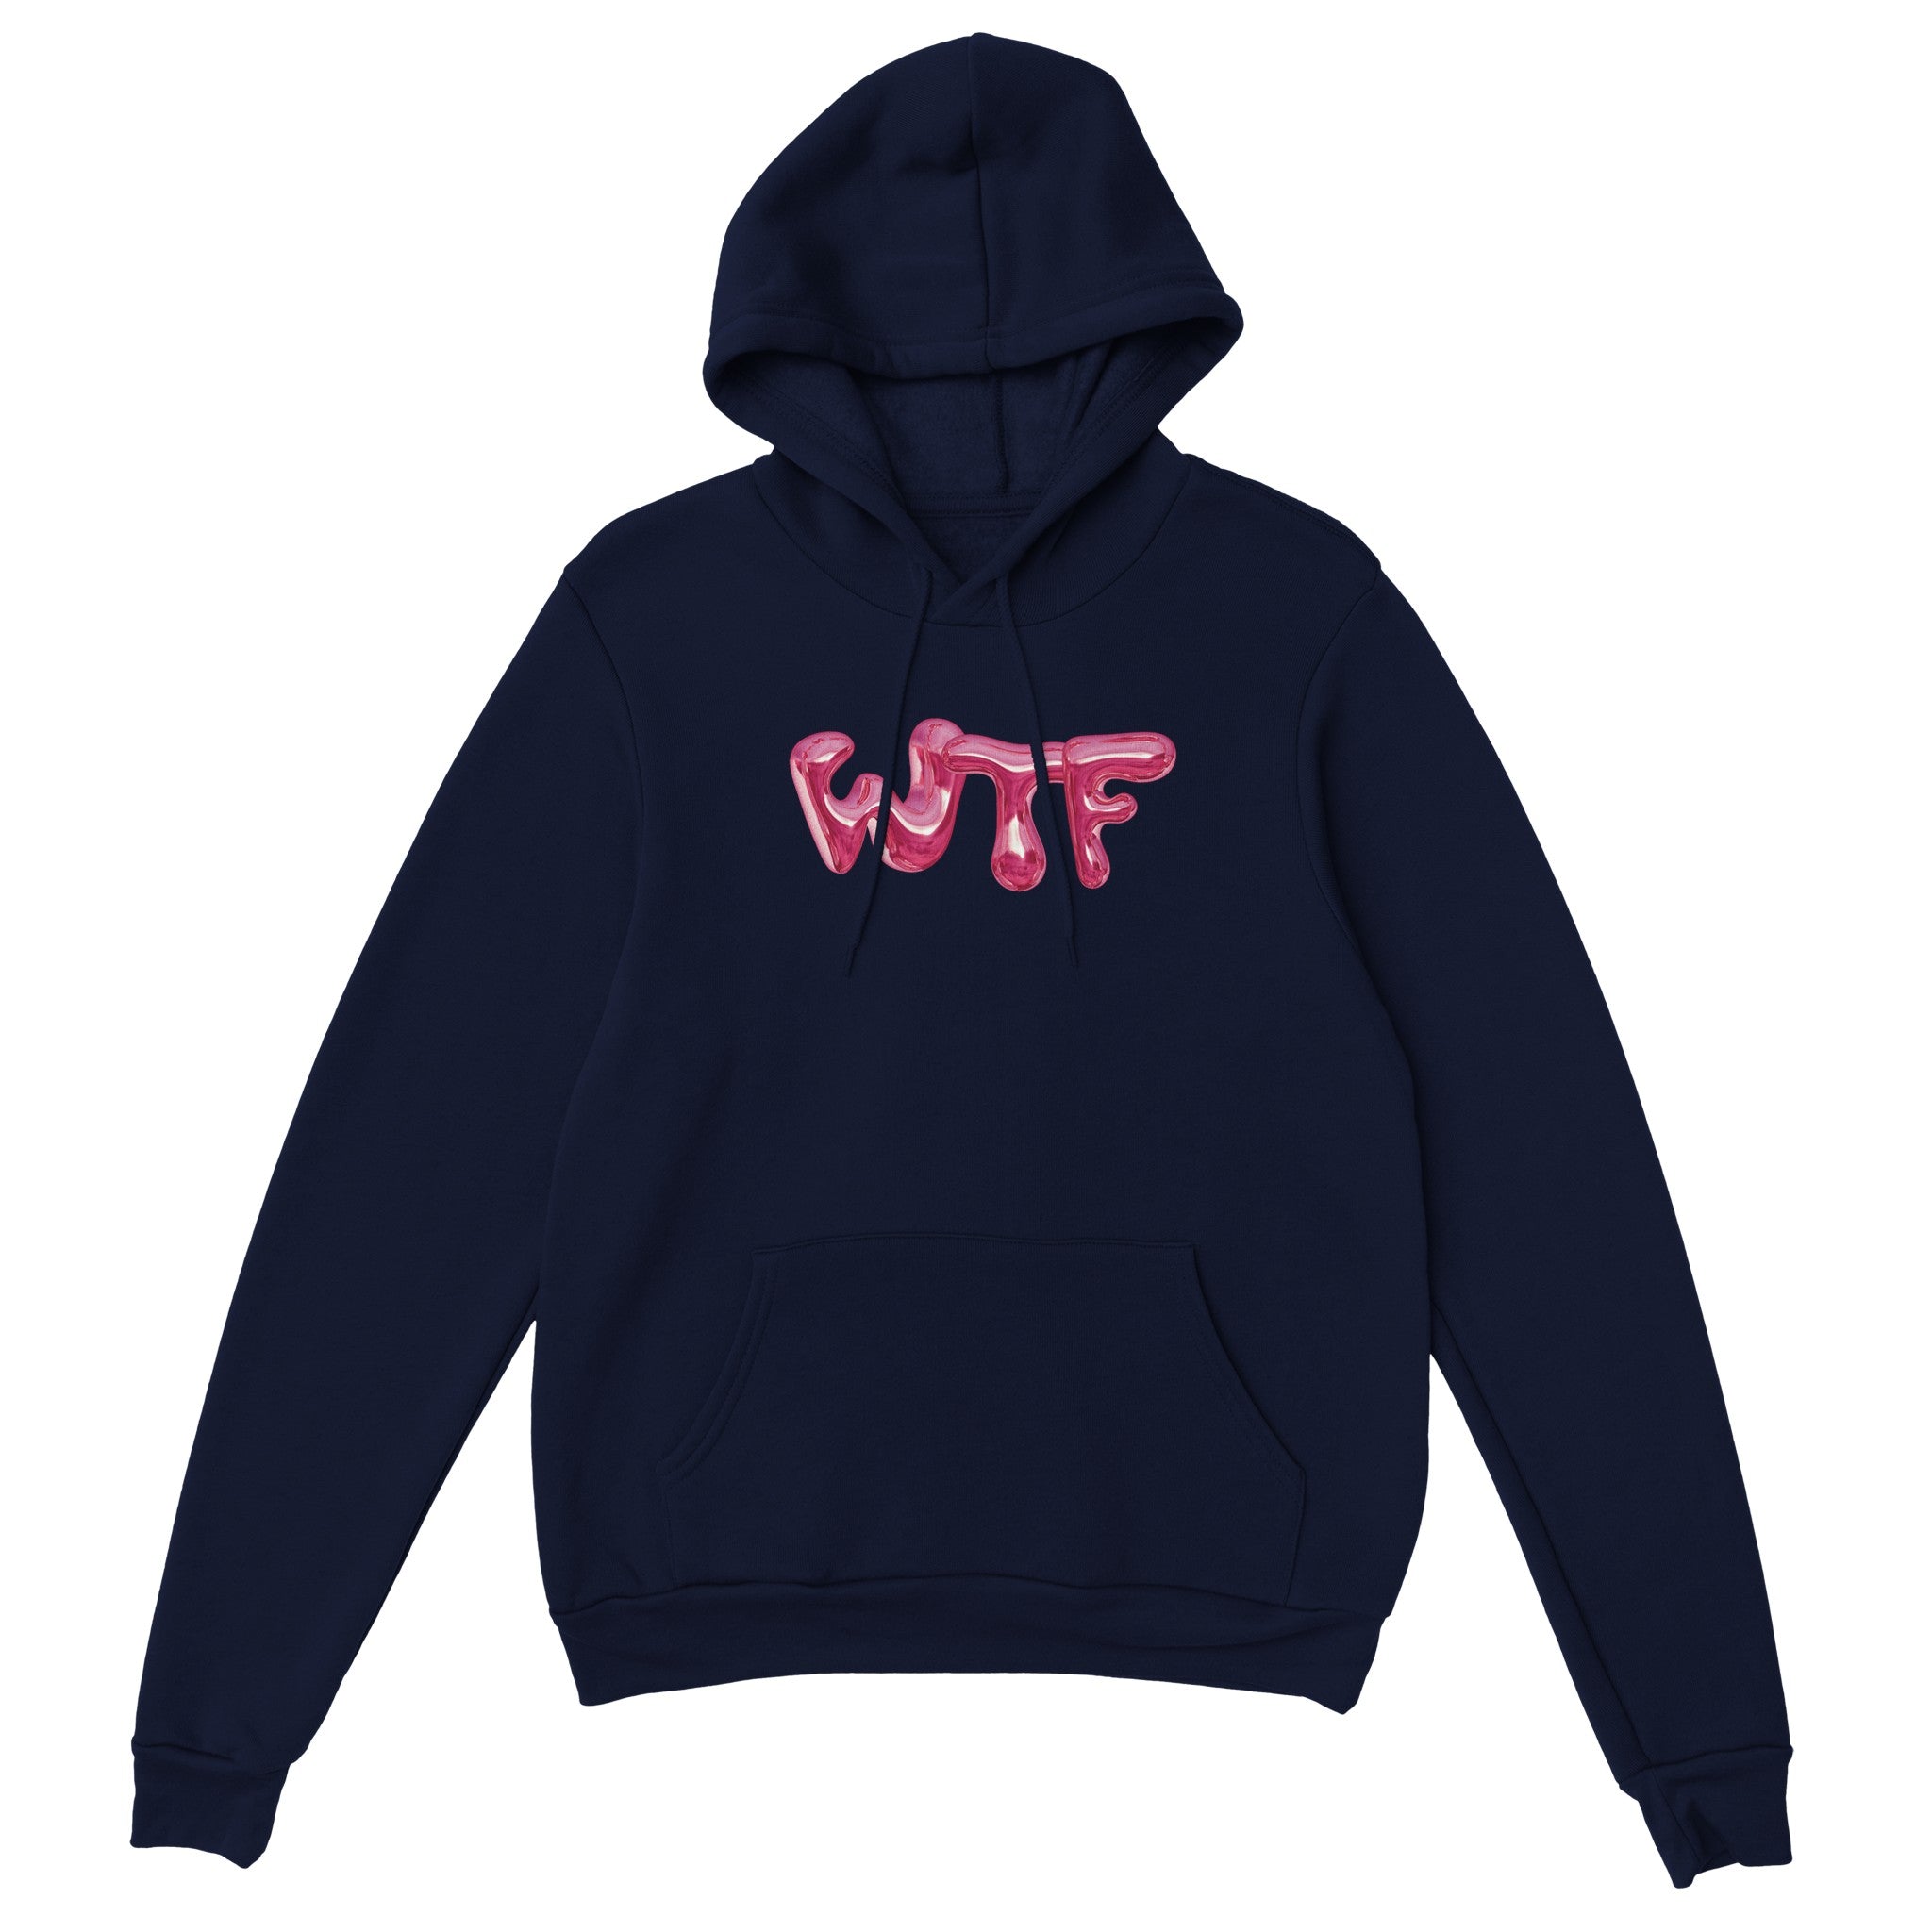 'WTF' hoodie - In Print We Trust